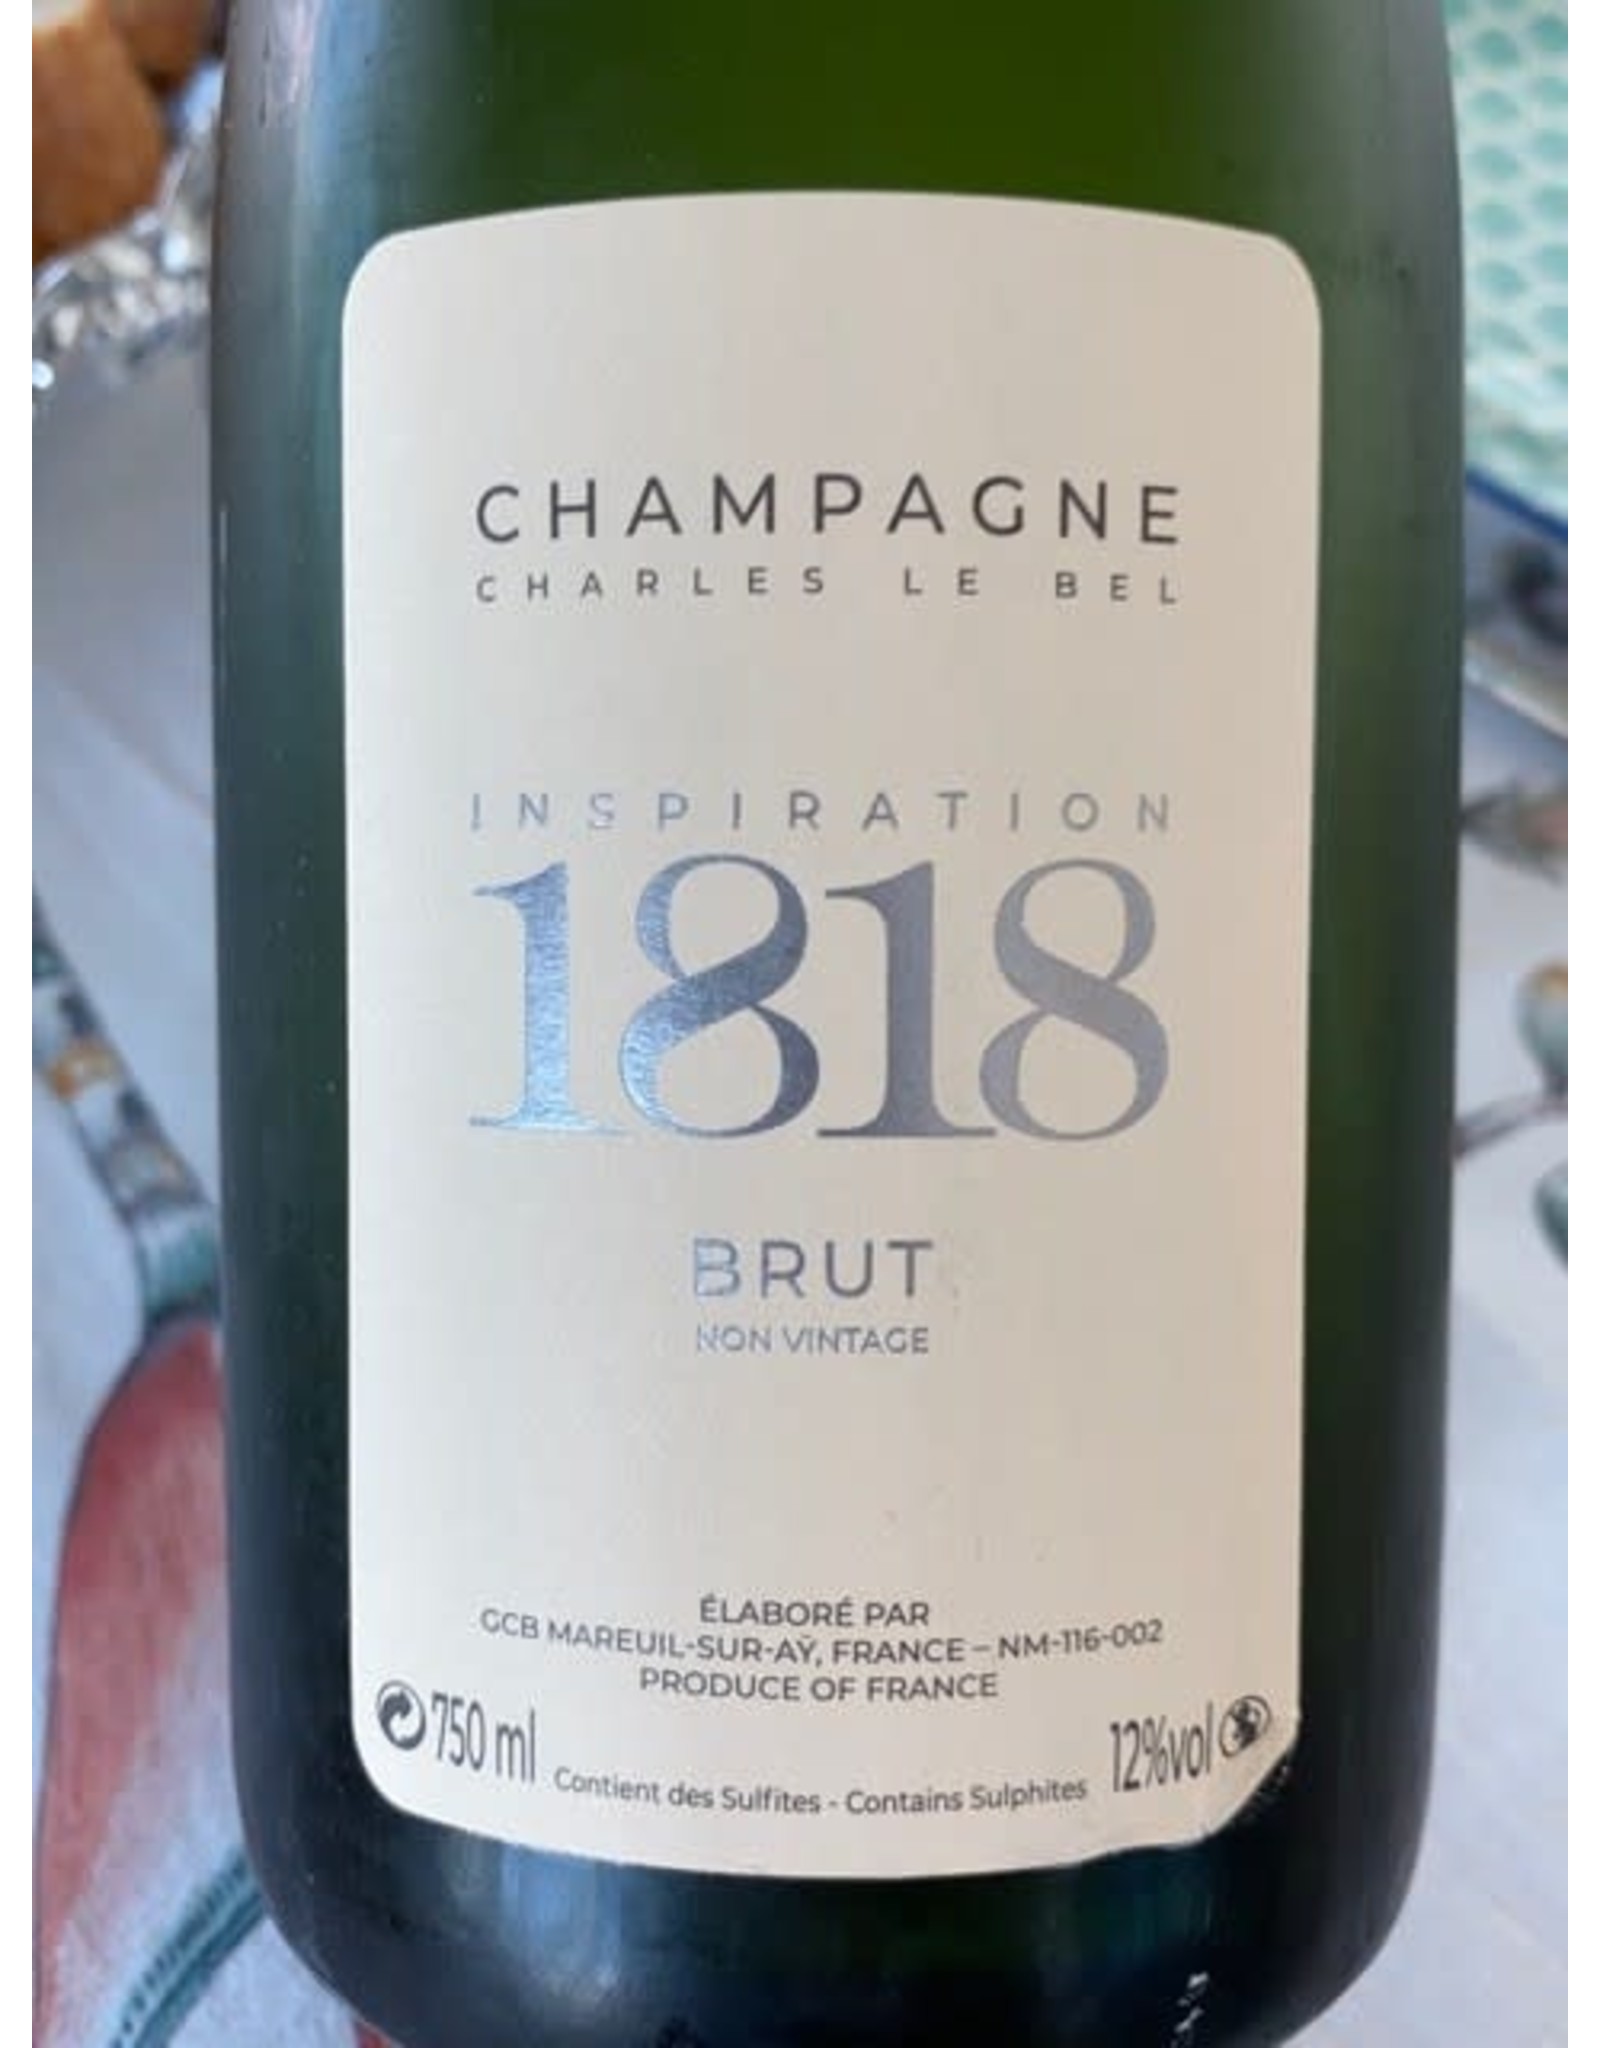 Charles Le Bel Inspiration 1818 Brut Champagne nv